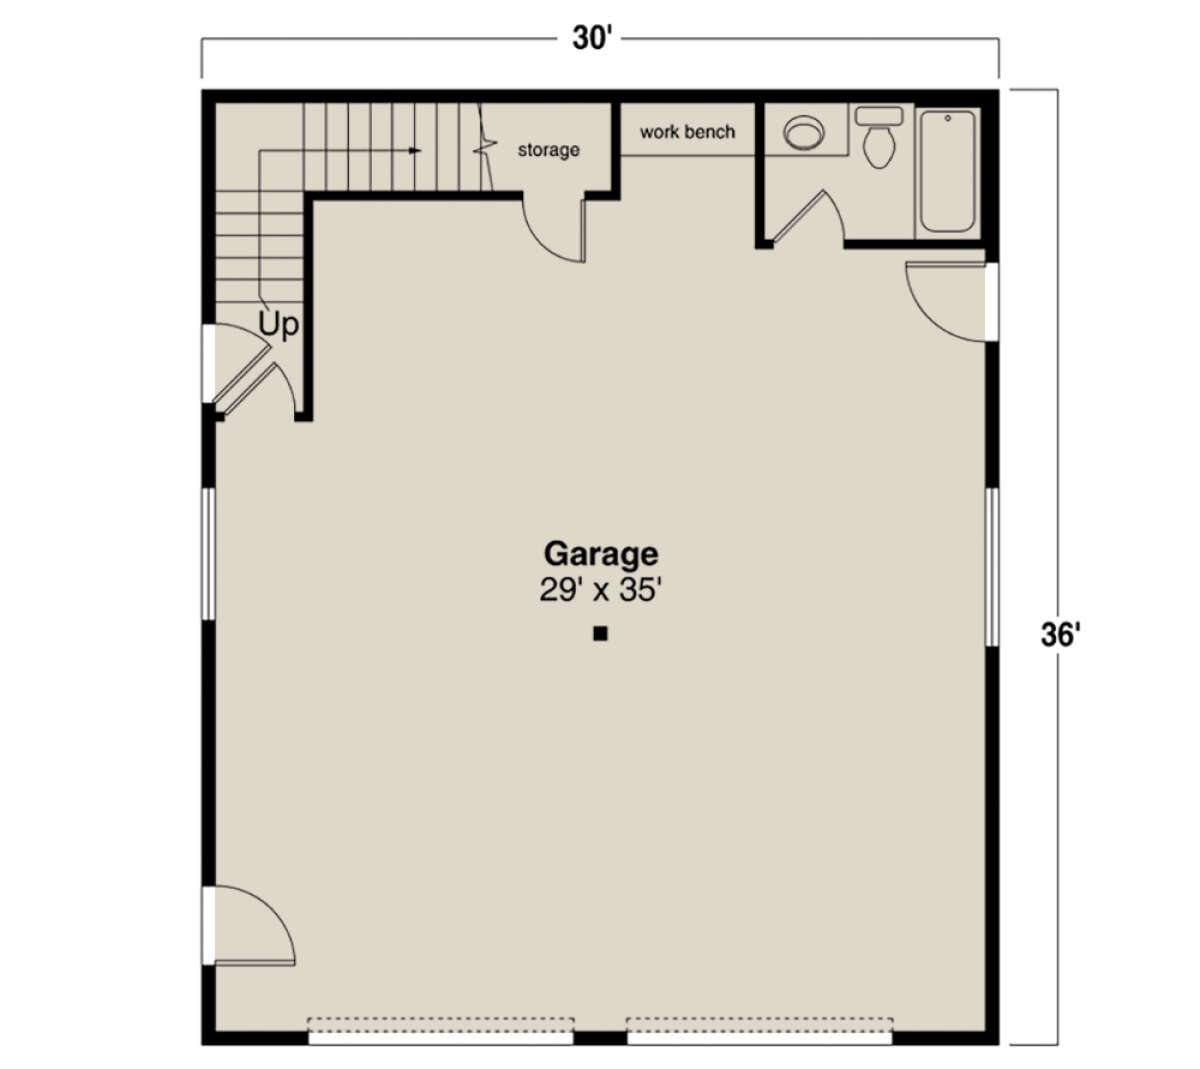 Garage Floor for House Plan #035-01041